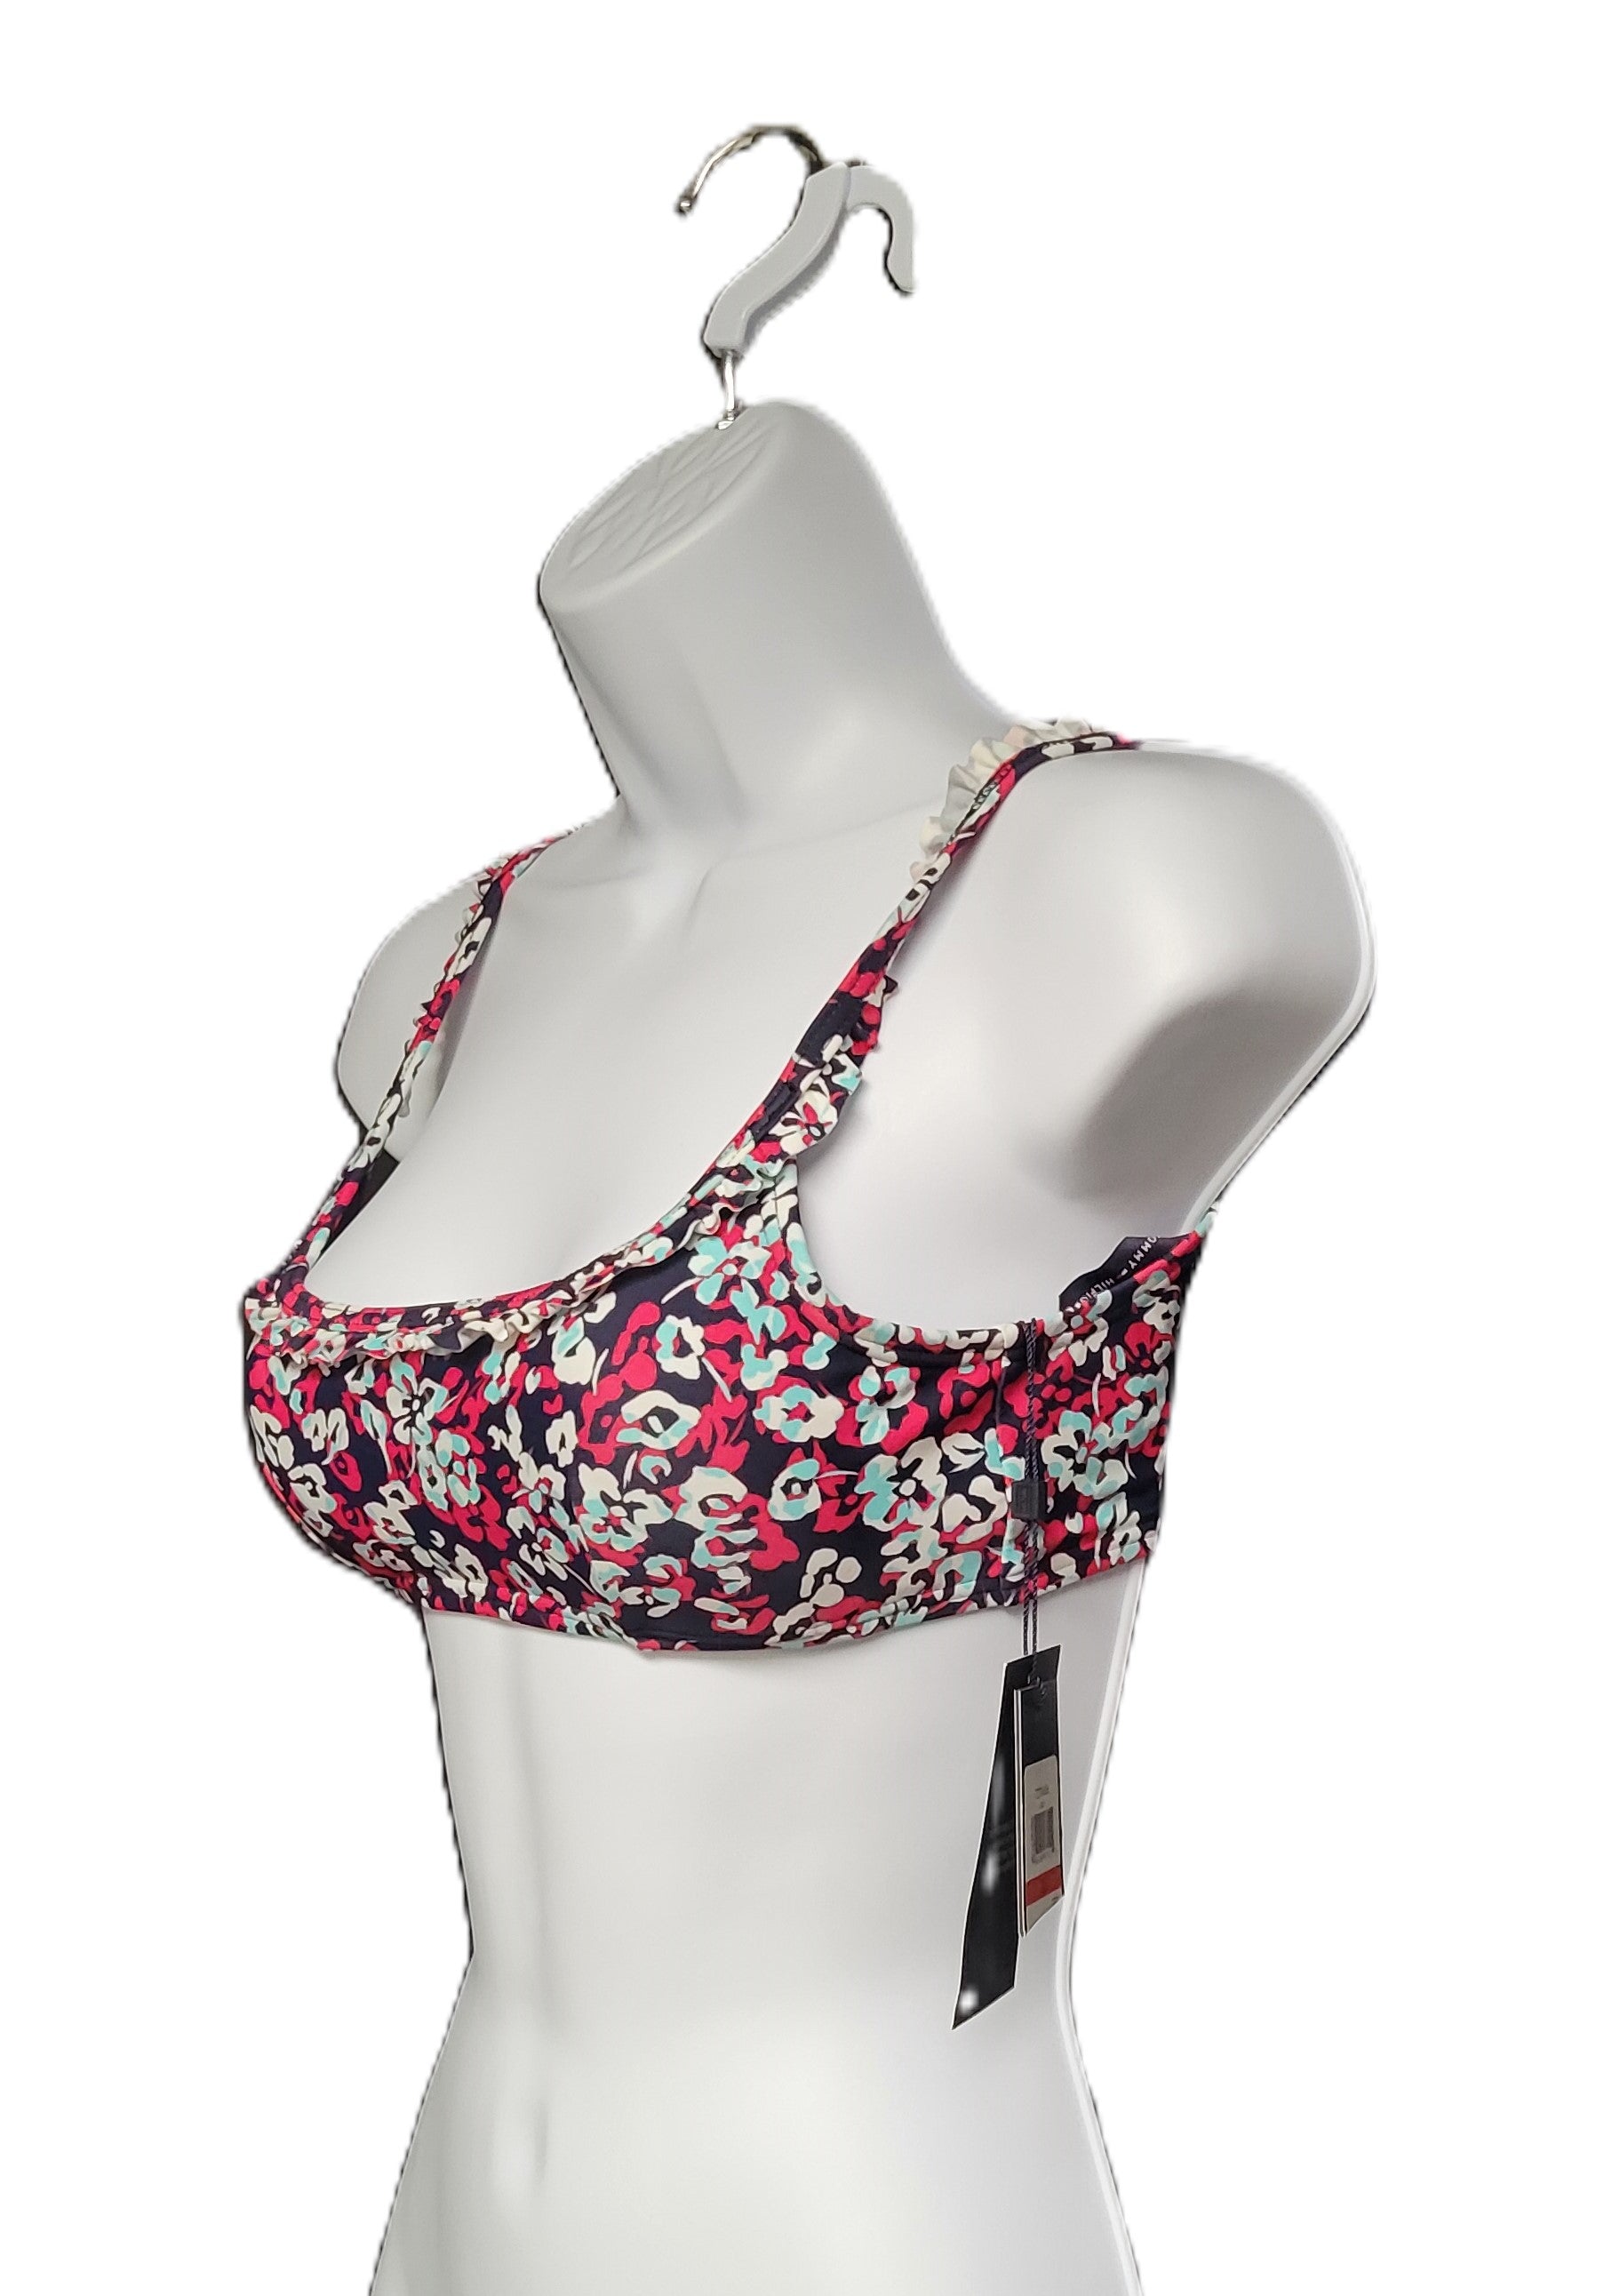 Tommy Hilfiger NEW Printed Ruffle Bikini Top Women's Swimsuit Size X-Small